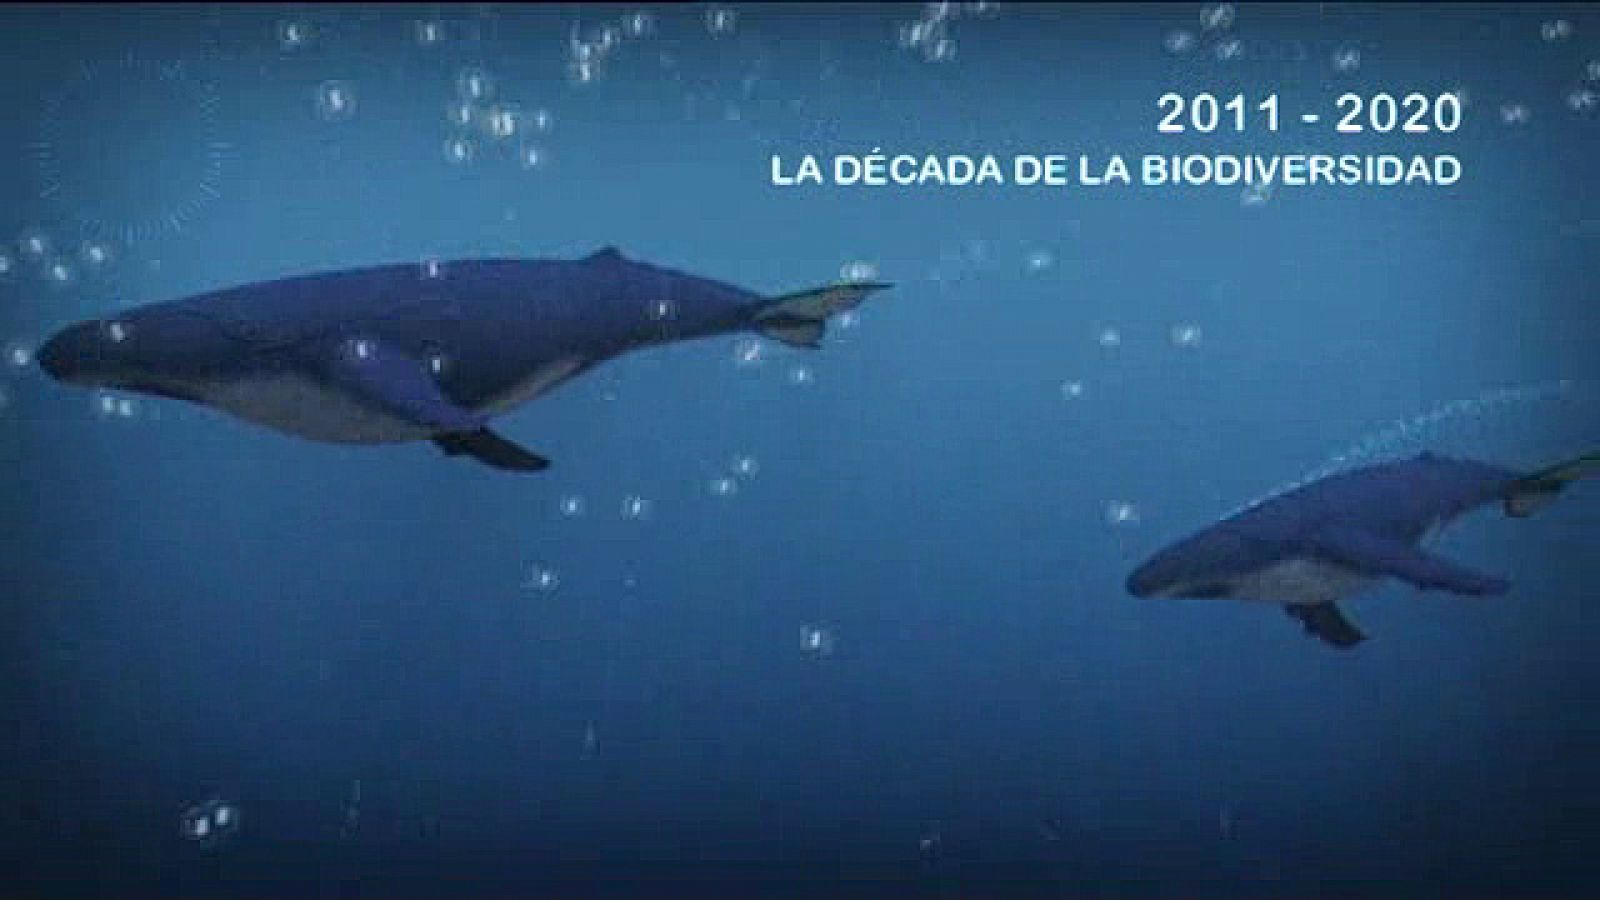 UNED - 2011-2020: La Década de la Biodiversidad - 01/04/11